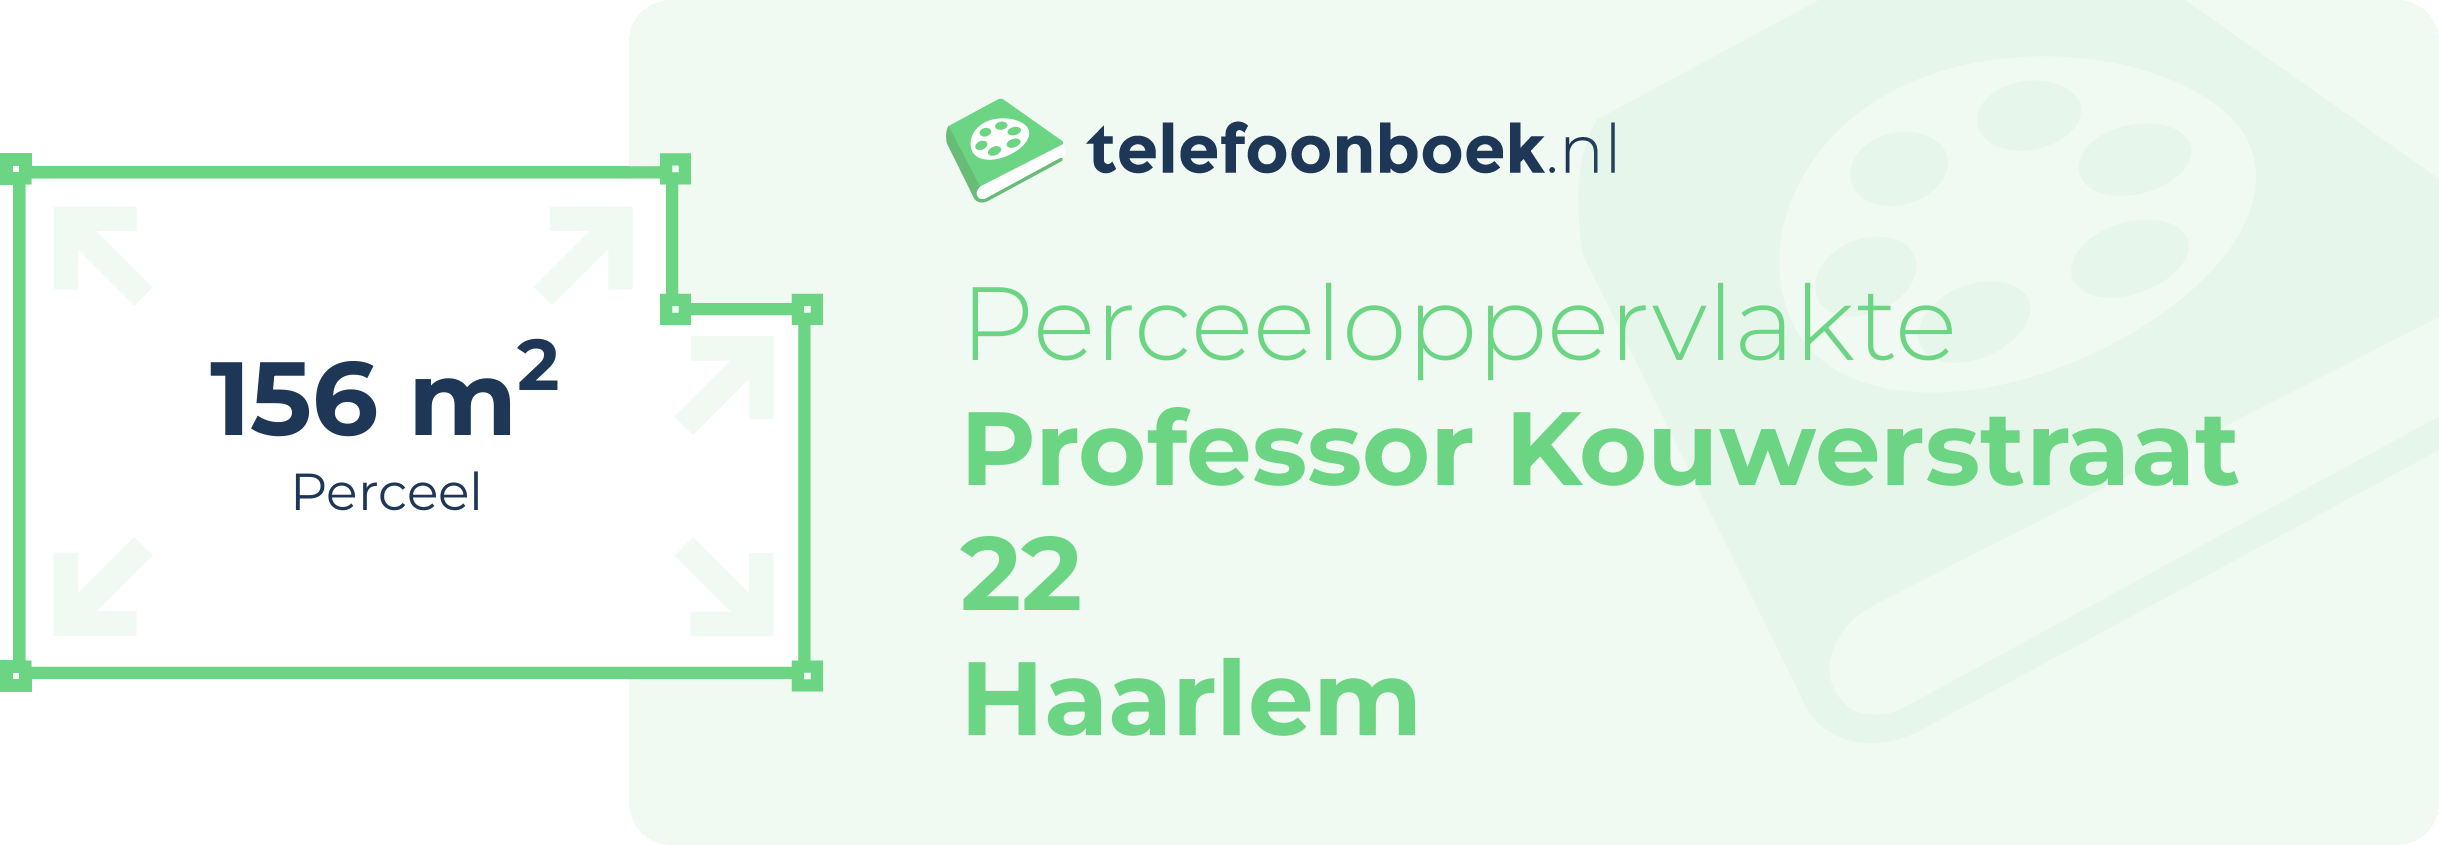 Perceeloppervlakte Professor Kouwerstraat 22 Haarlem